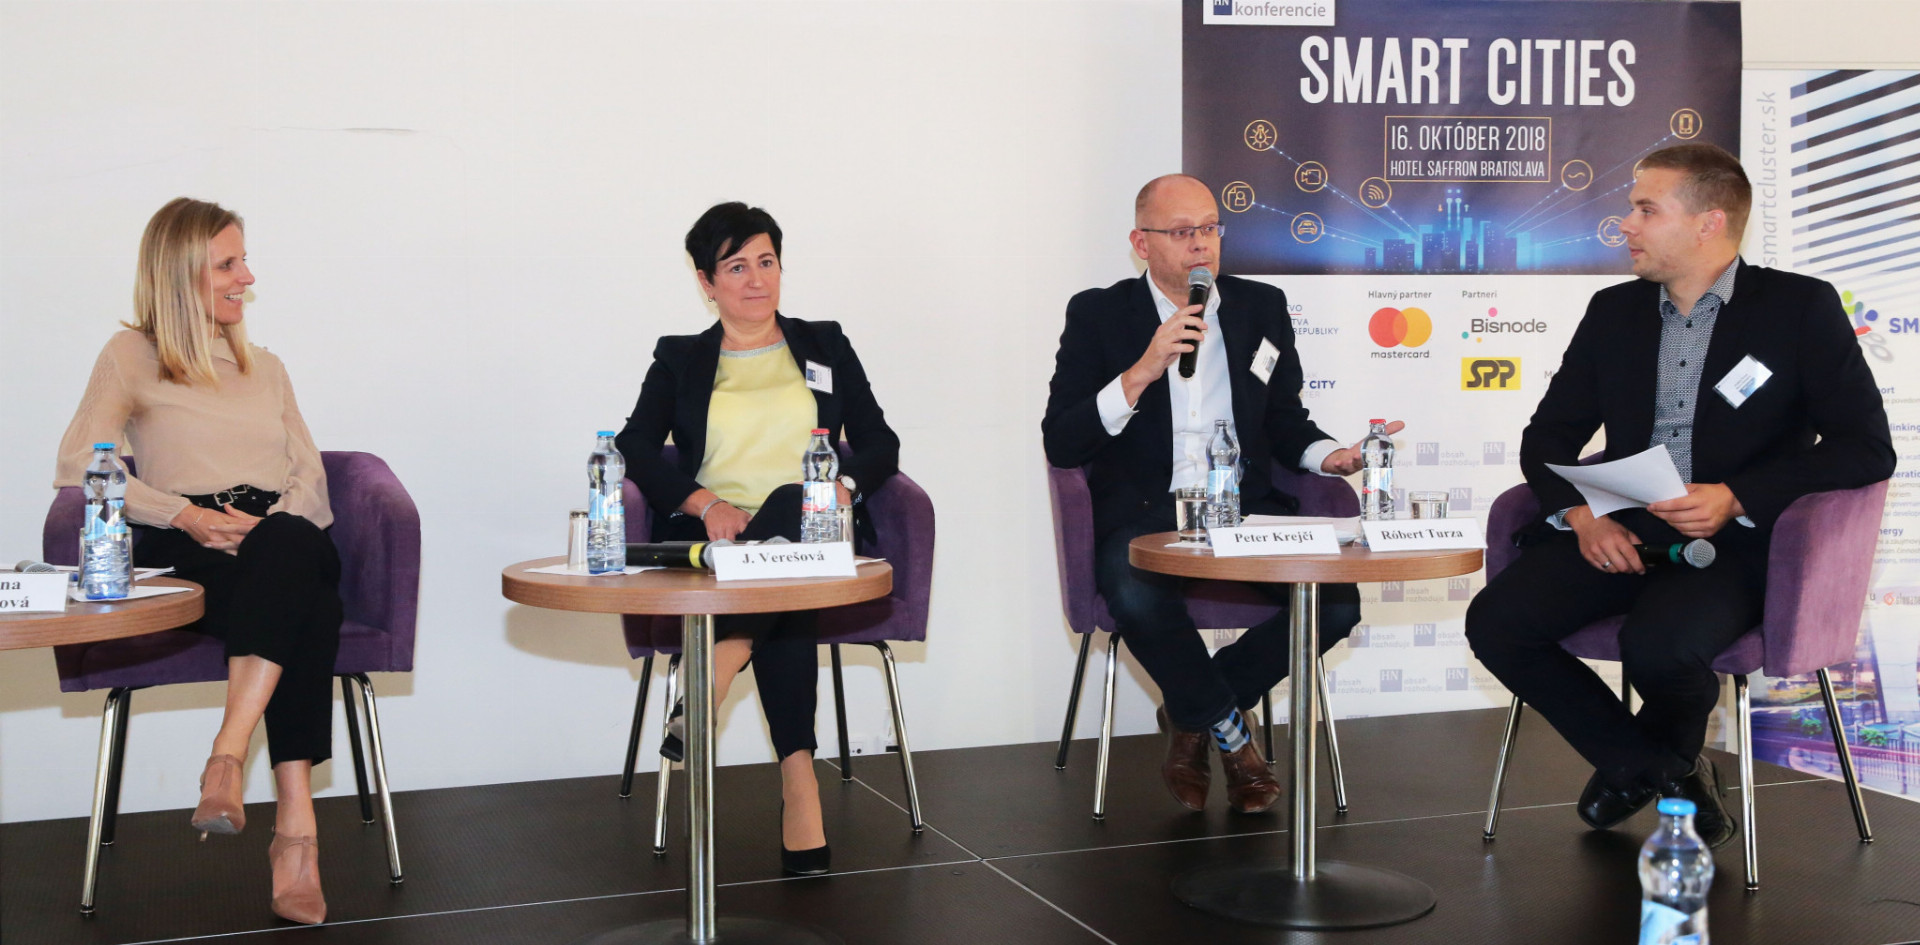 Na konferencii diskutovali aj (zľava) Katarína Kakalíková z Mastercard, Jarmila Verešová zo spoločnosti Innogy, Petr Krejčí z dátovej firmy Bisnode a moderátor Róbert Turza.